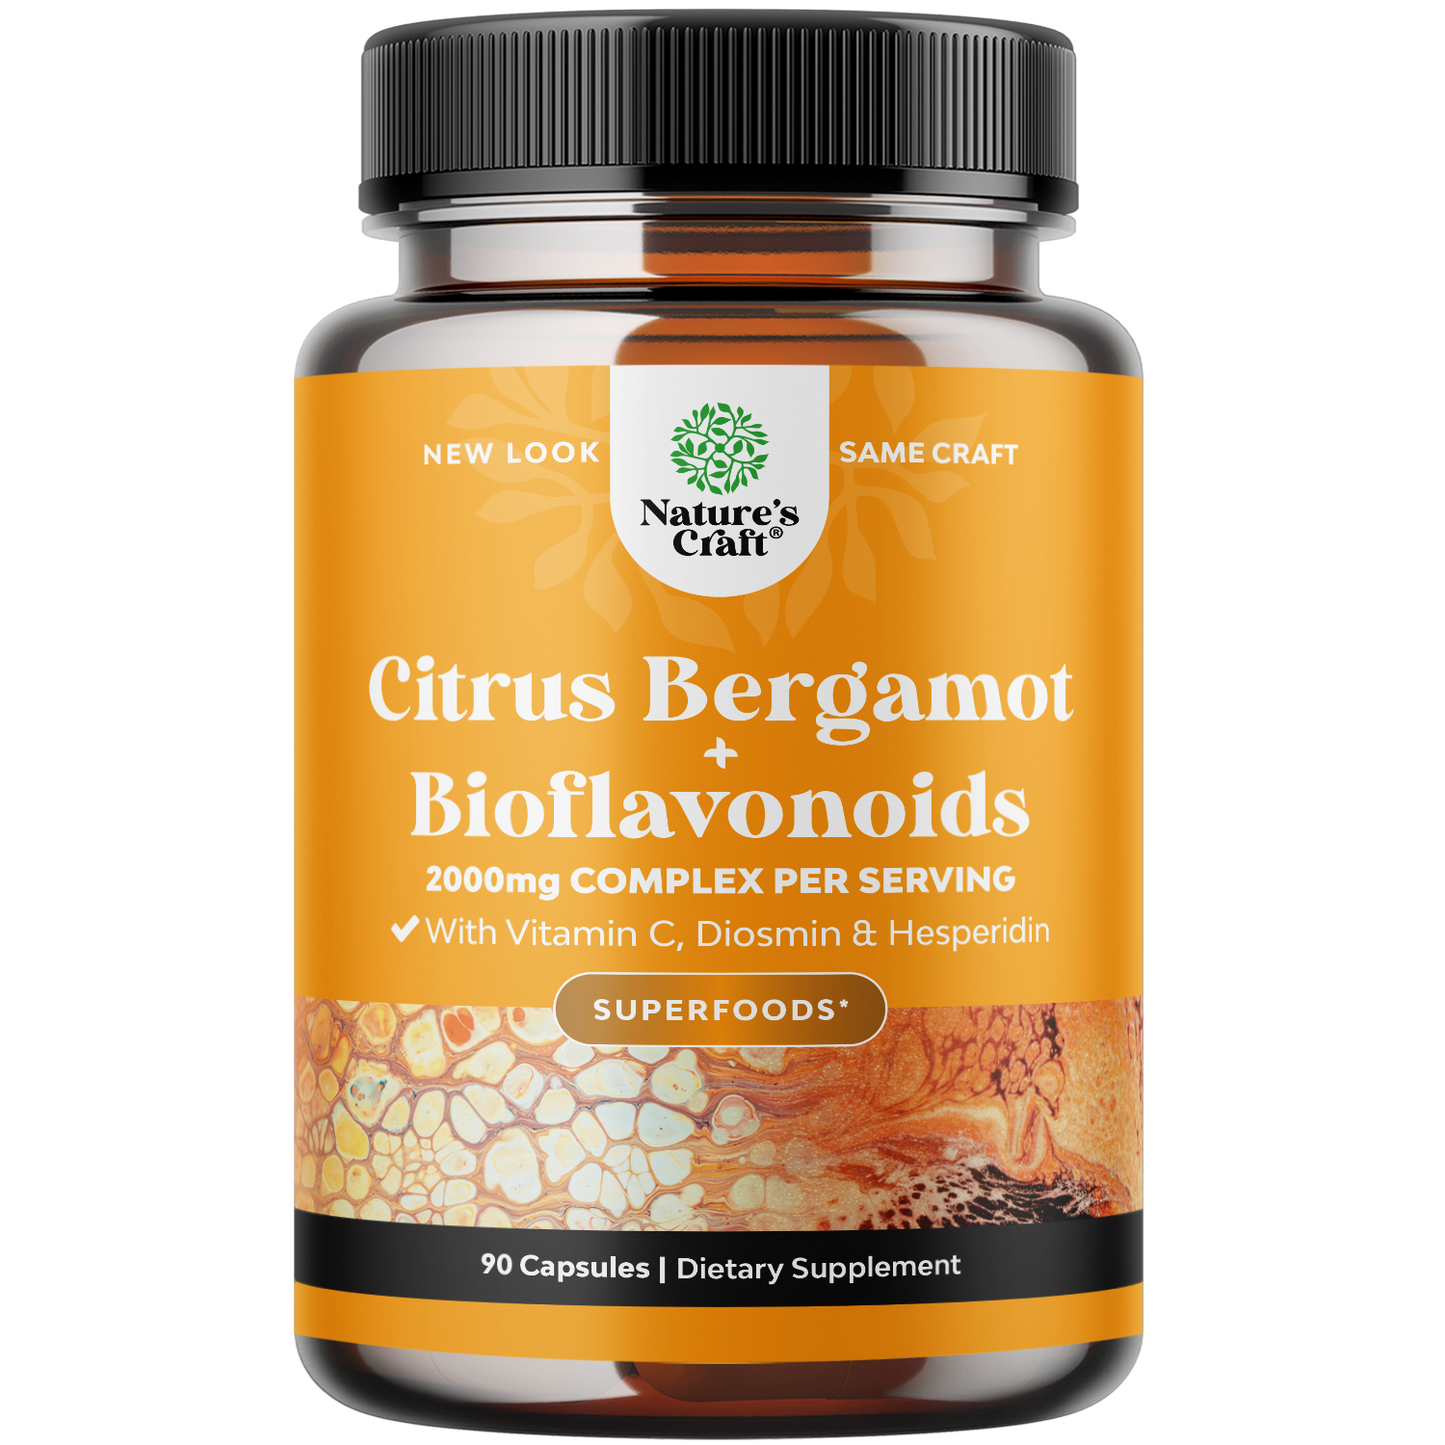 Citrus Bergamot + Bioflavonoids